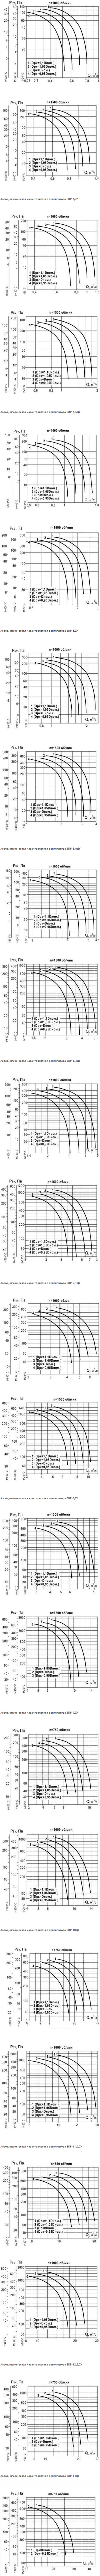 Аэродинамическая характеристика вентилятора ВКР ДУ